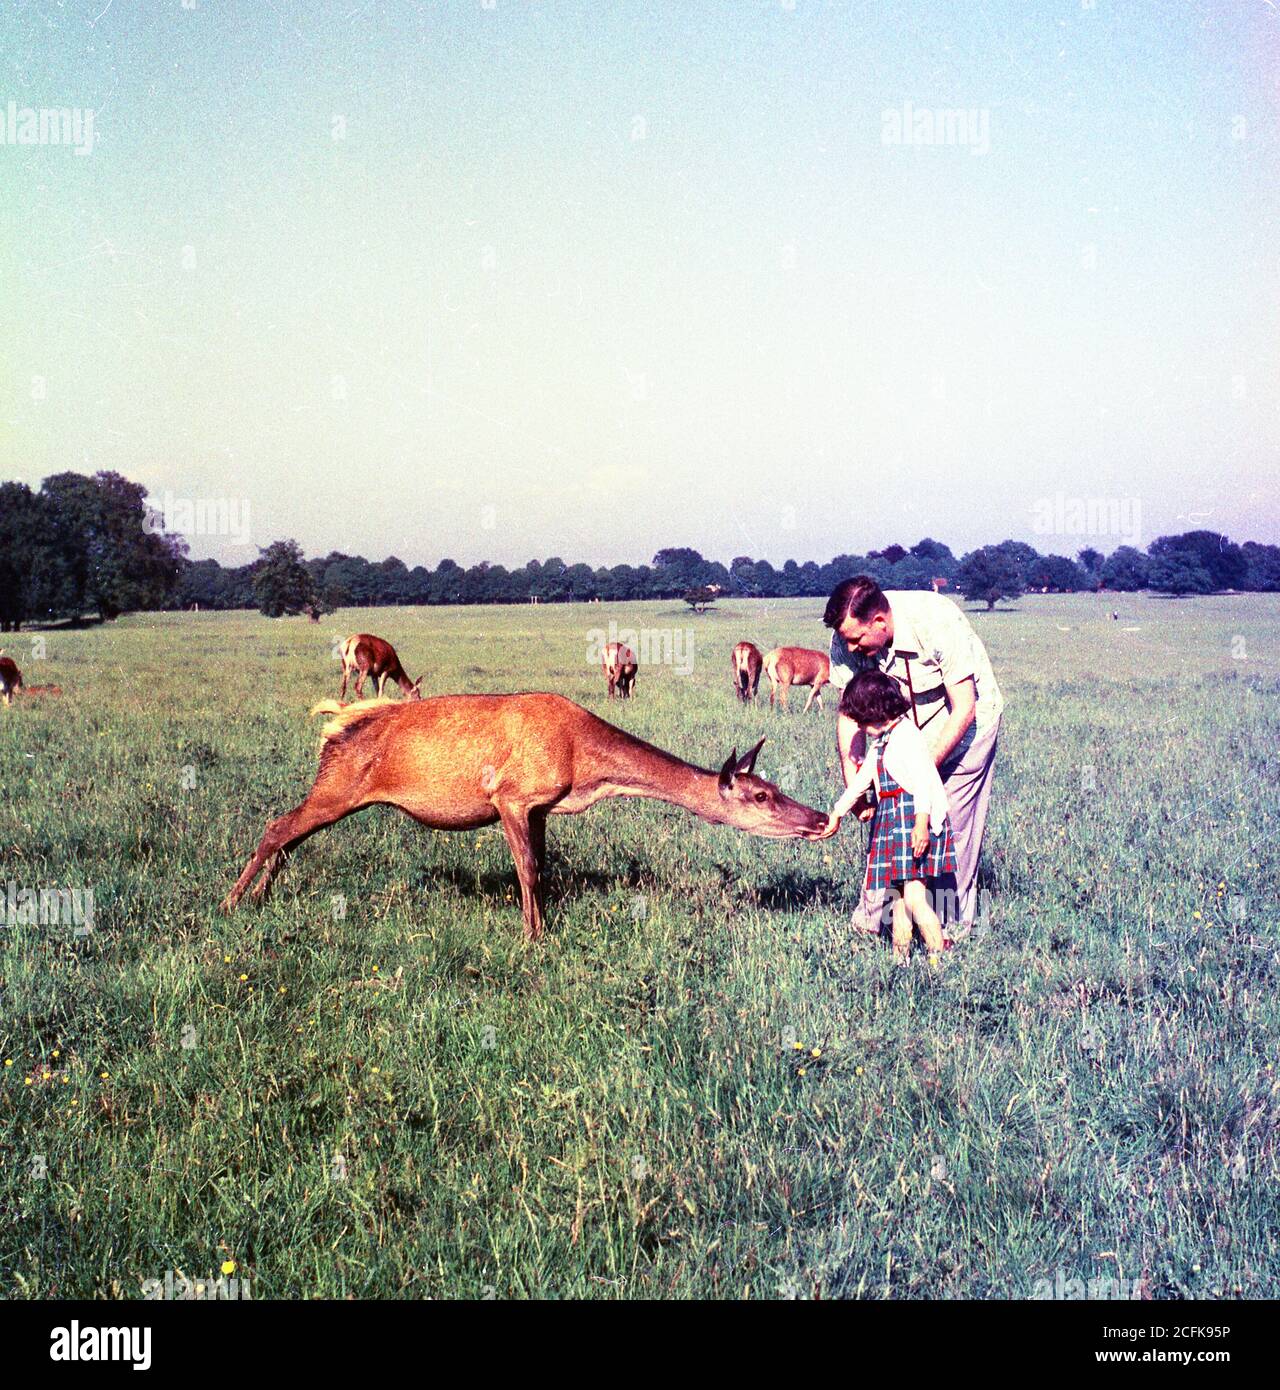 Père et jeune fille se nourrir d'un cerf apprivoé, années 1950, États-Unis Banque D'Images